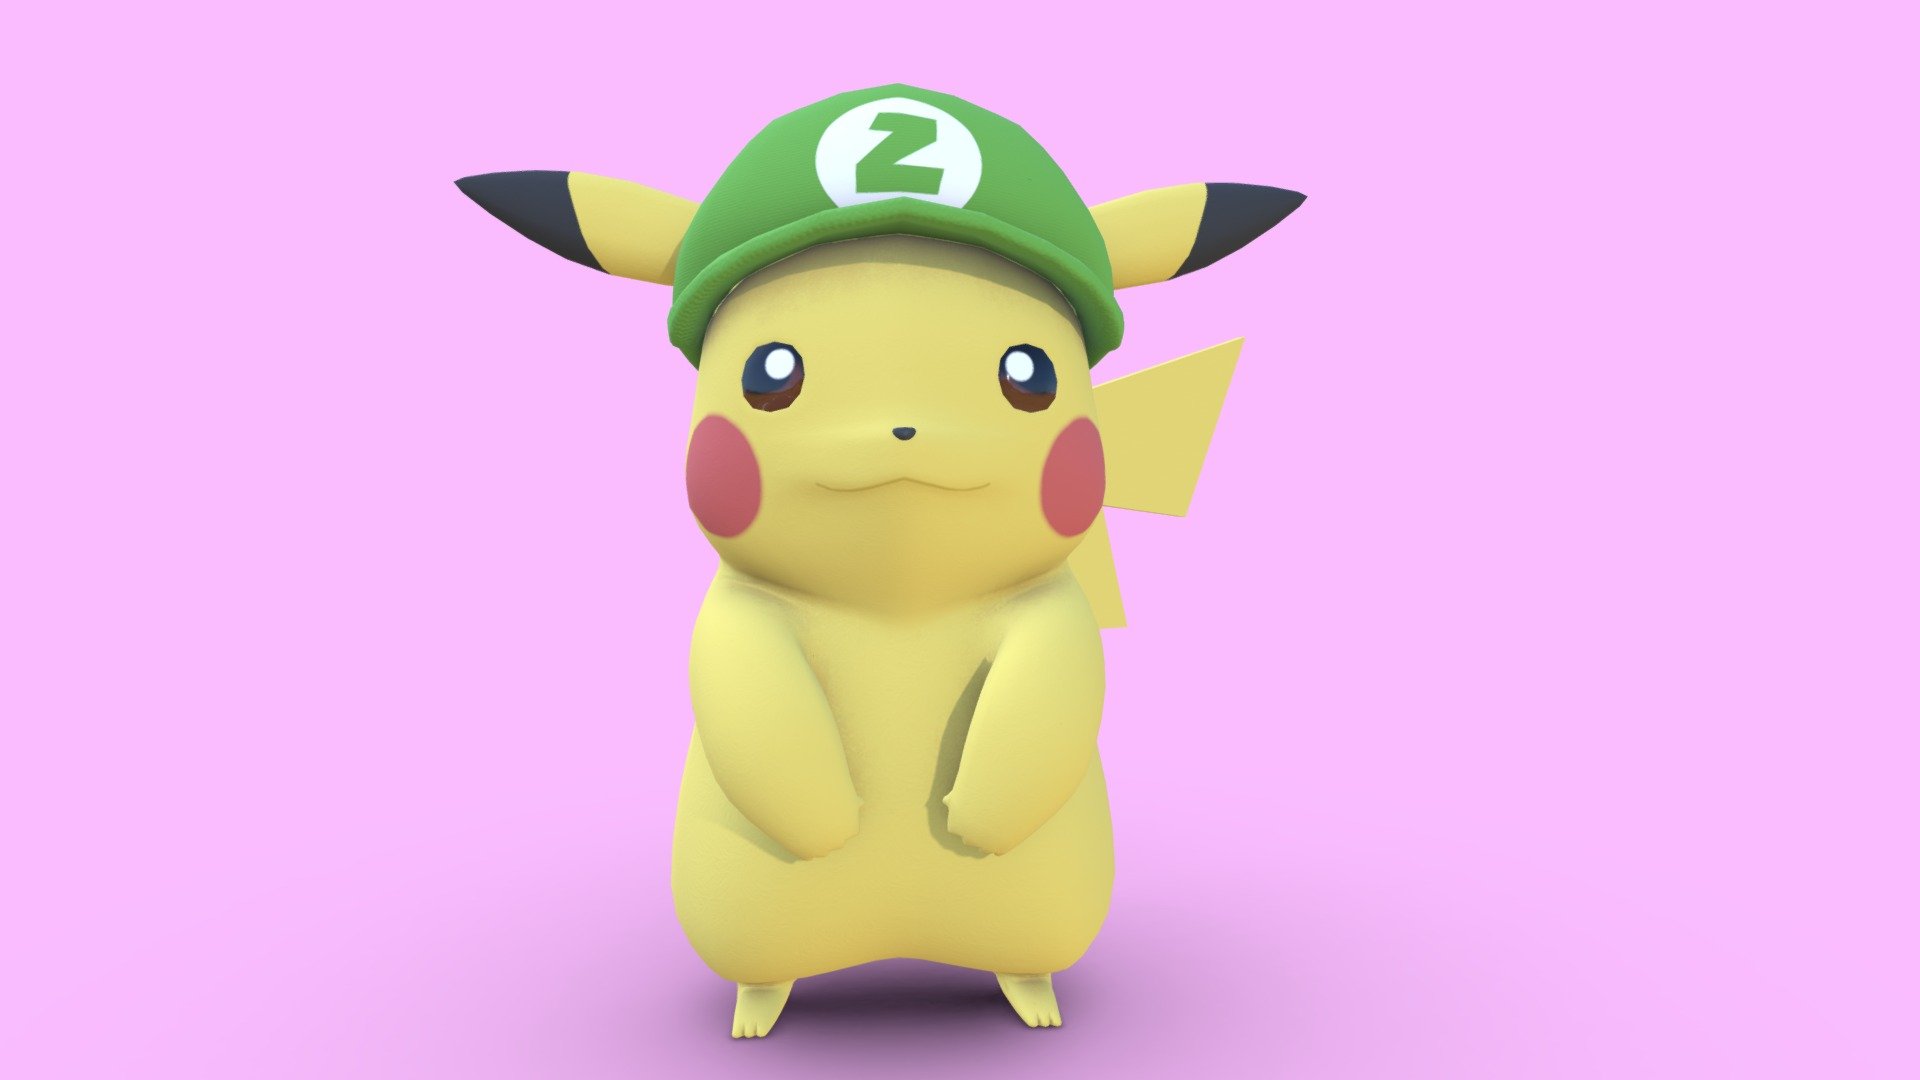 Pikachu (Pokemon) - 3D model by ChelsCCT (ChelseyCreatesThings) on